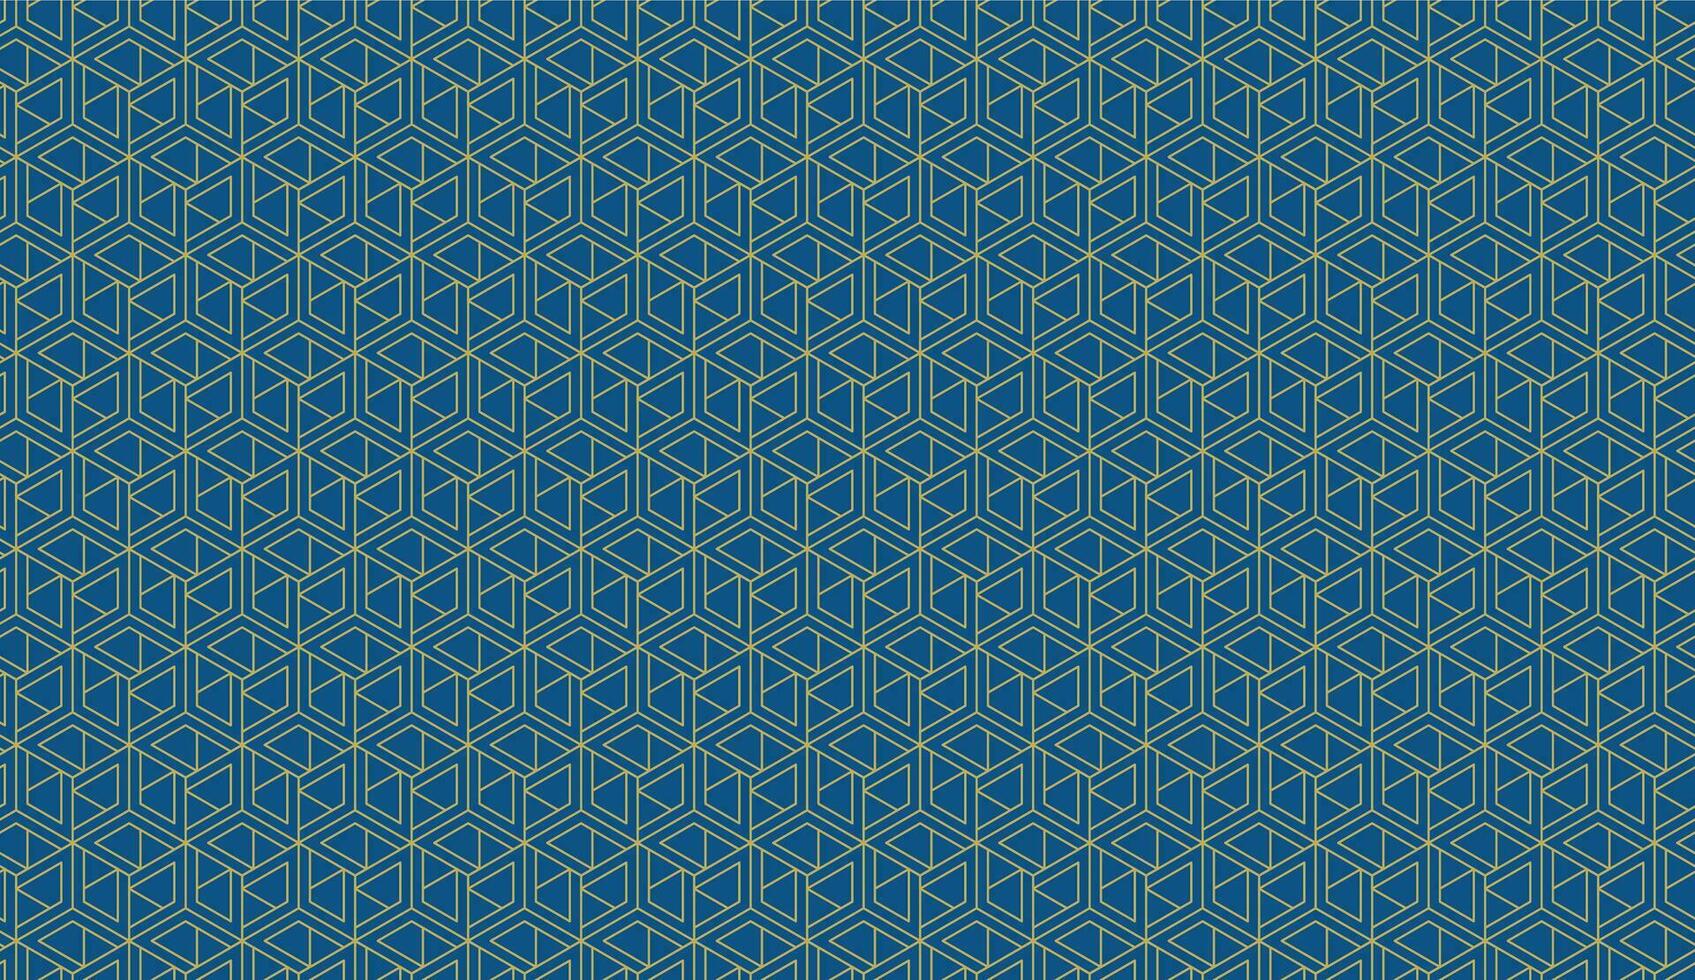 geometrisches Muster nahtlos. trendiger Designvektorhintergrund für Webhintergrund oder Papierdruck. vektor